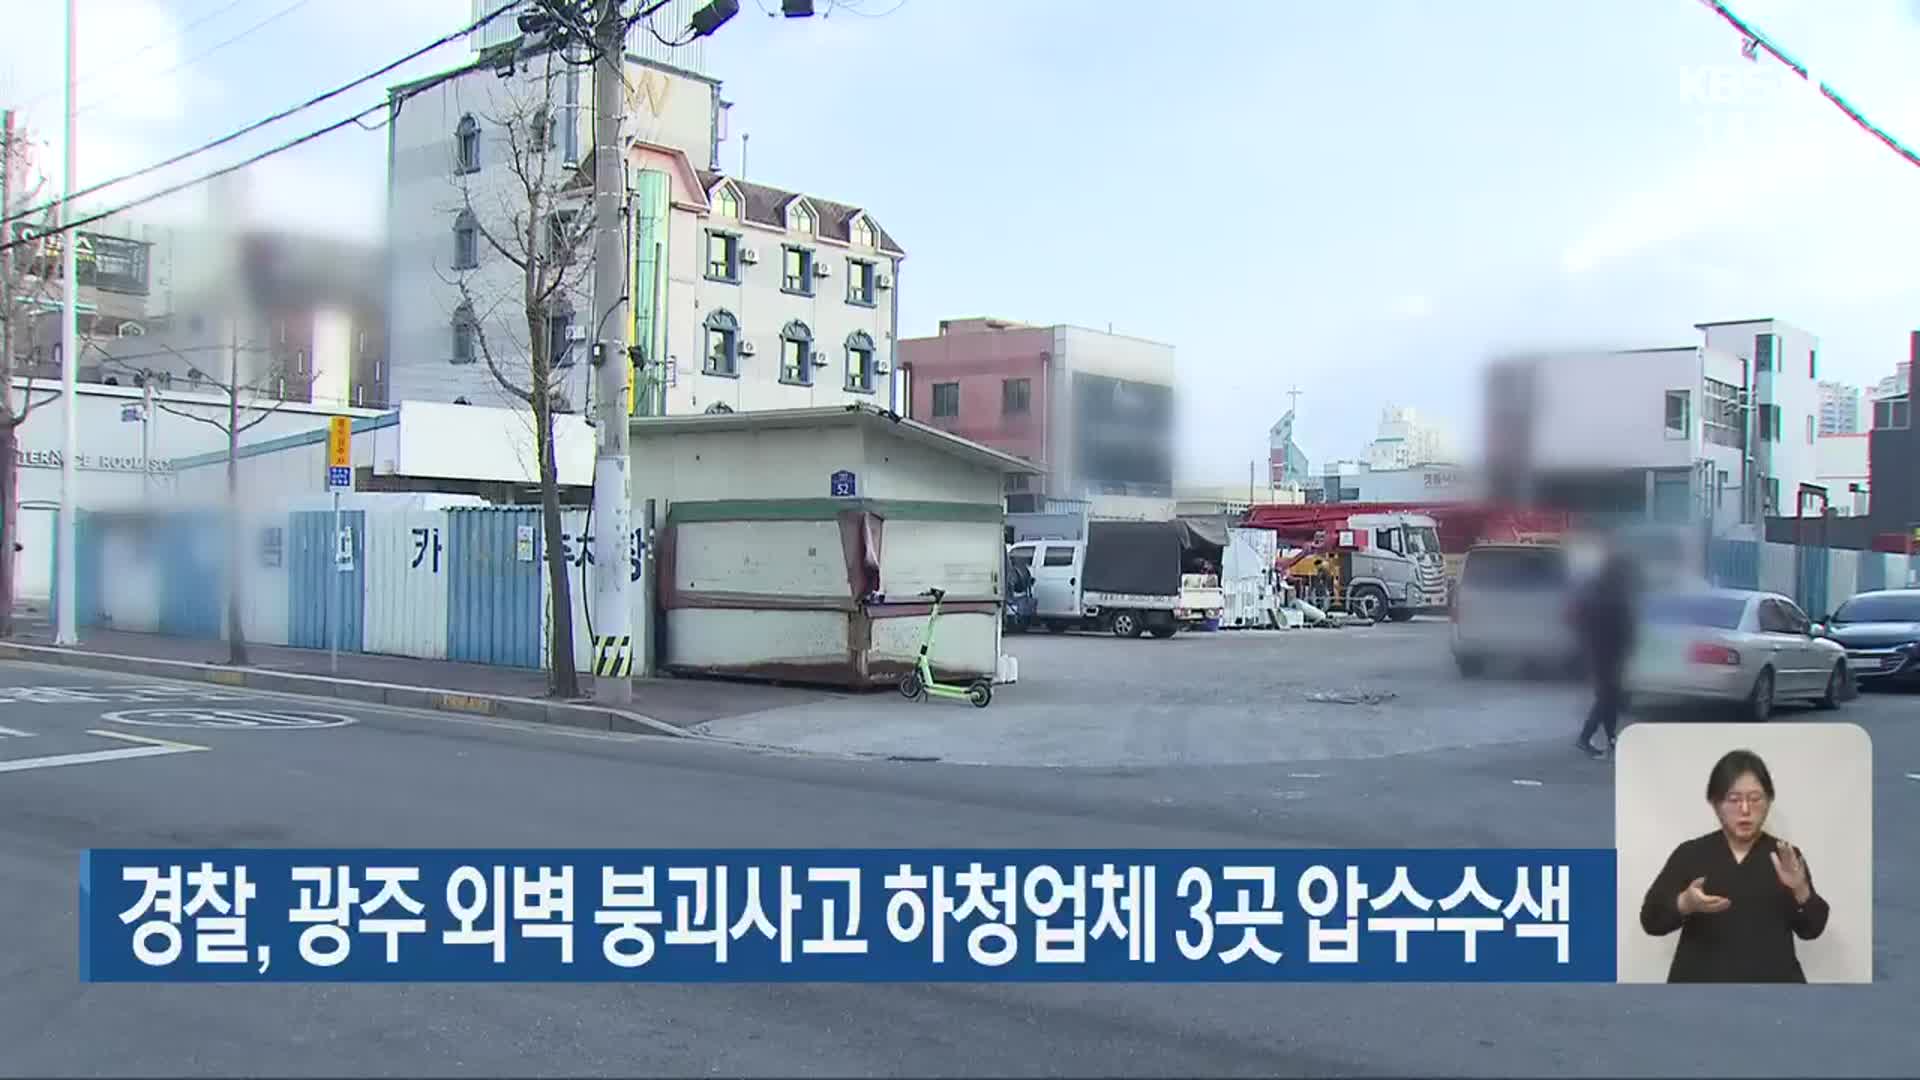 경찰, 광주 외벽 붕괴사고 하청업체 3곳 압수수색